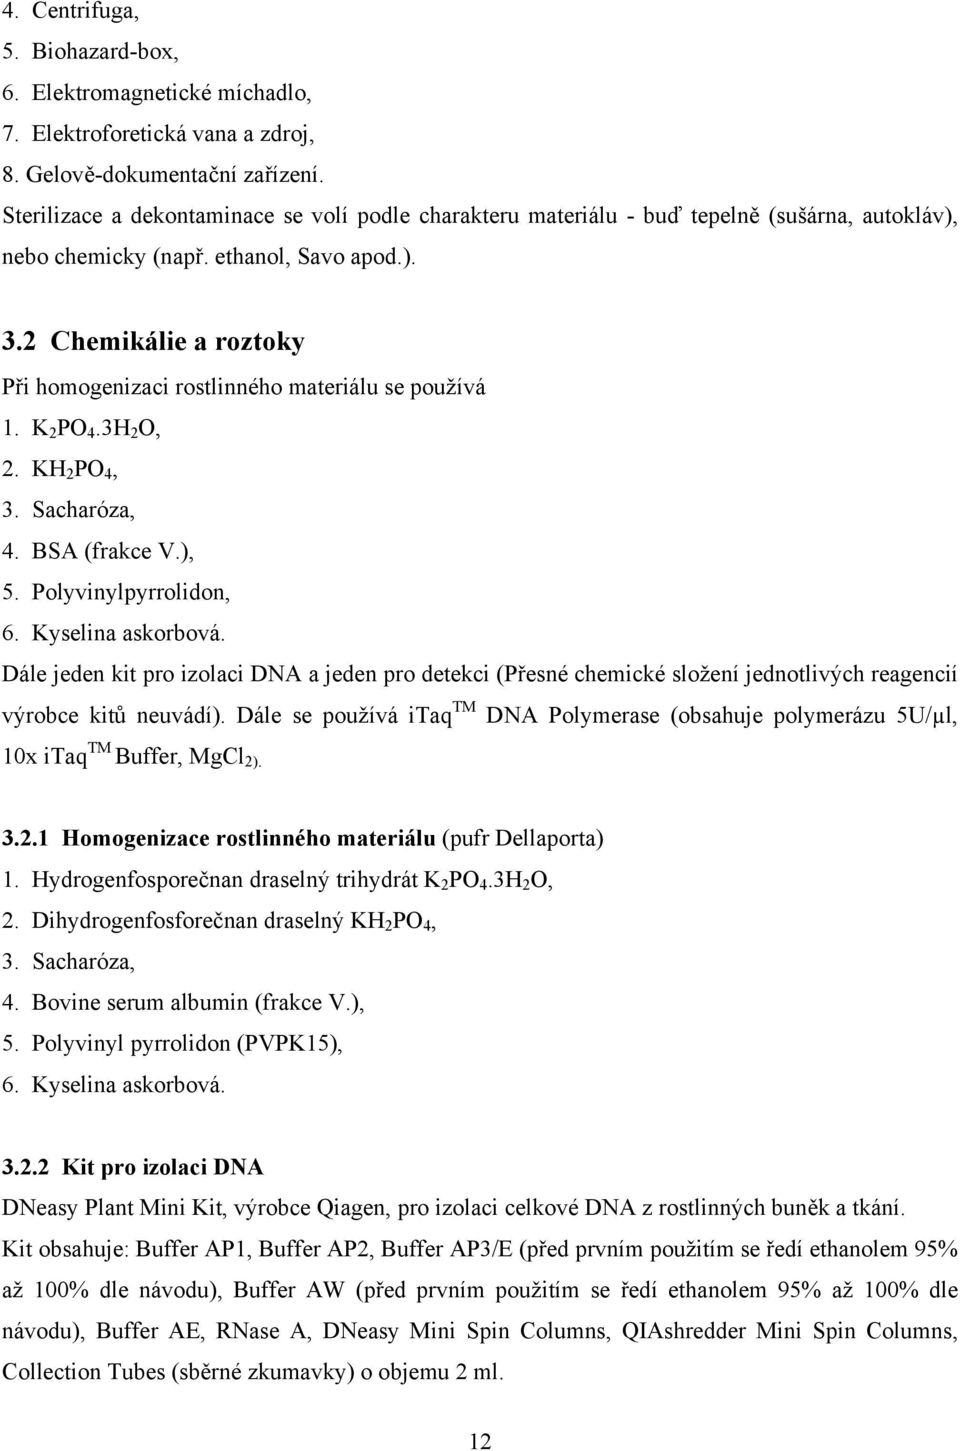 2 Chemikálie a roztoky Při homogenizaci rostlinného materiálu se používá 1. K 2 PO 4.3H 2 O, 2. KH 2 PO 4, 3. Sacharóza, 4. BSA (frakce V.), 5. Polyvinylpyrrolidon, 6. Kyselina askorbová.